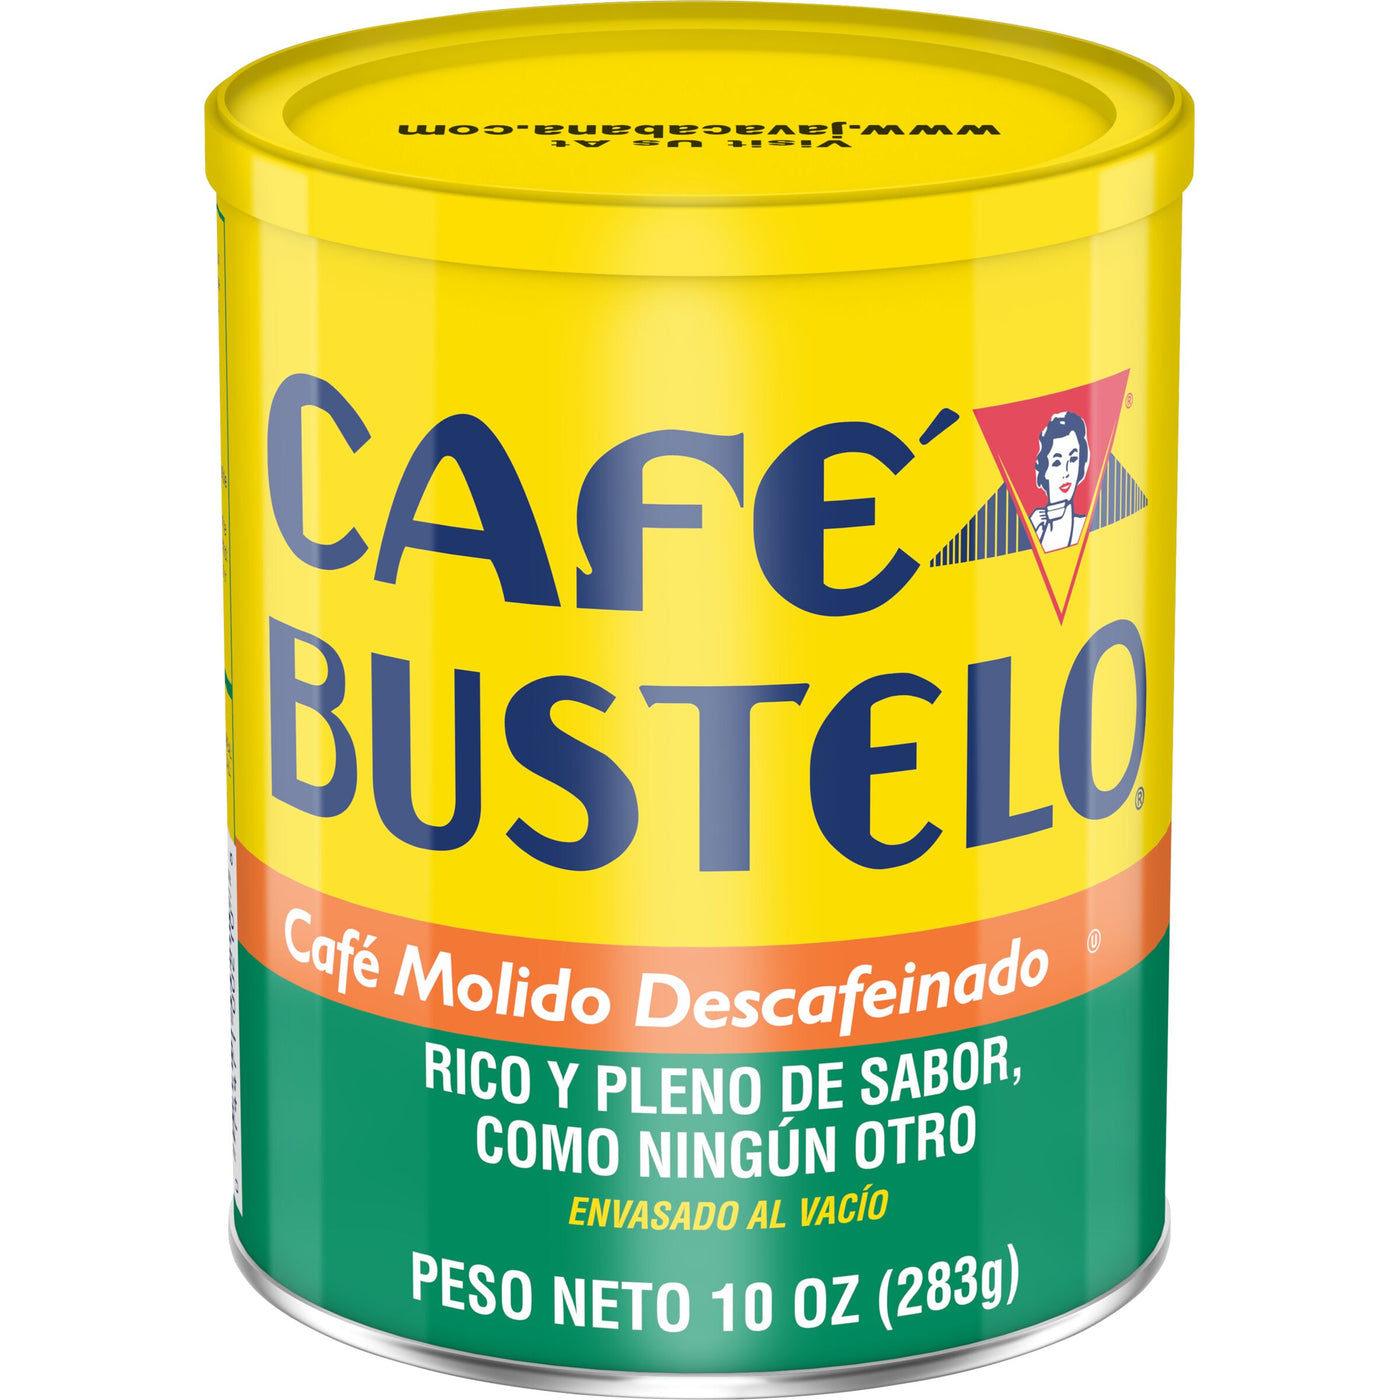 Cafe Bustelo Decaf Medium-Dark Roast, Ground Coffee Can, 10 oz